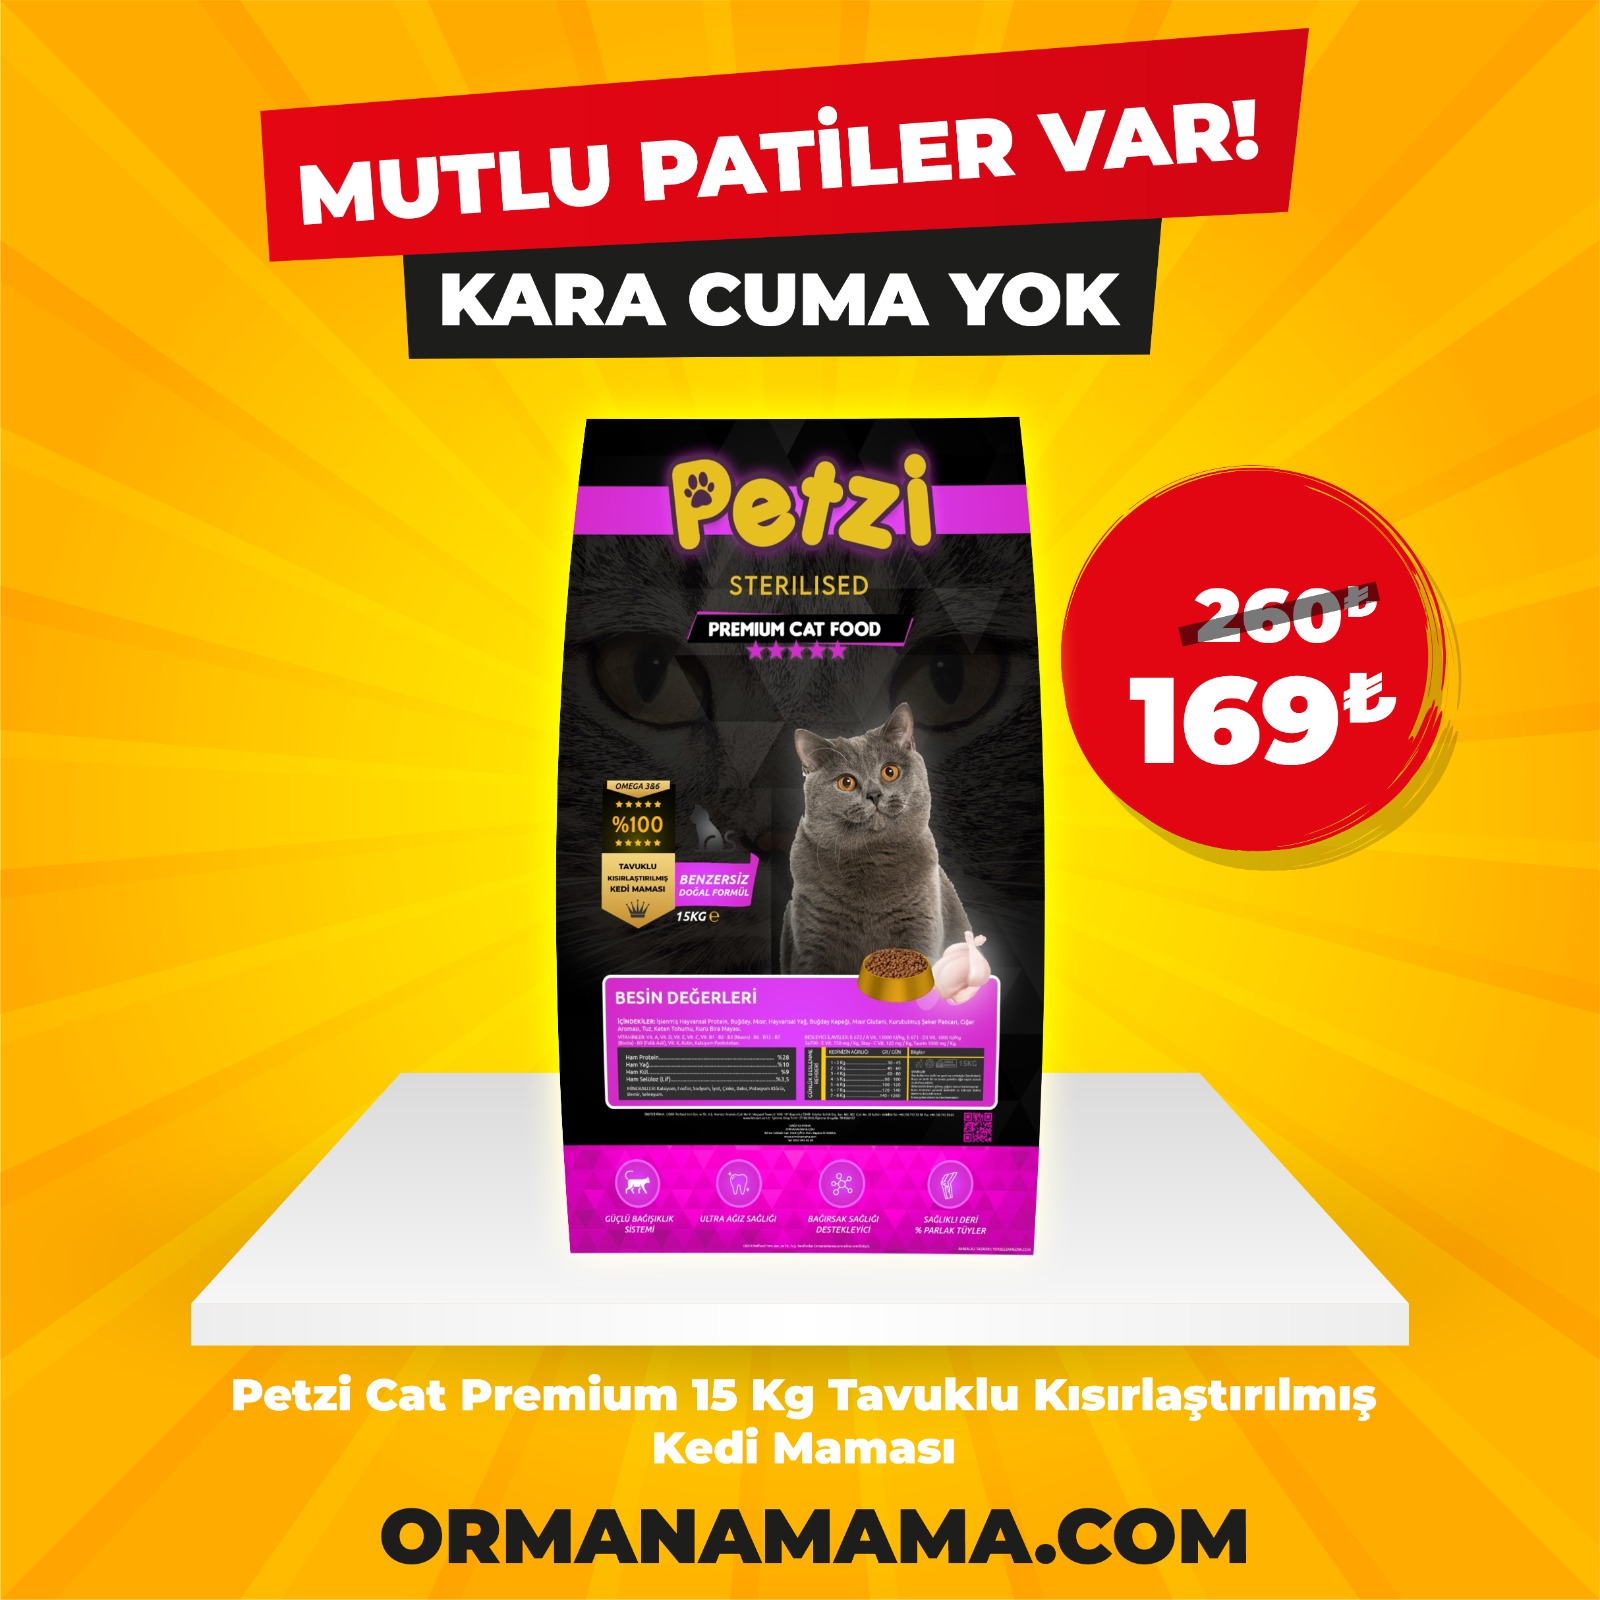 Petzi Cat Premium 15 Kg Tavuklu Kısırlaştırılmış Kedi Maması